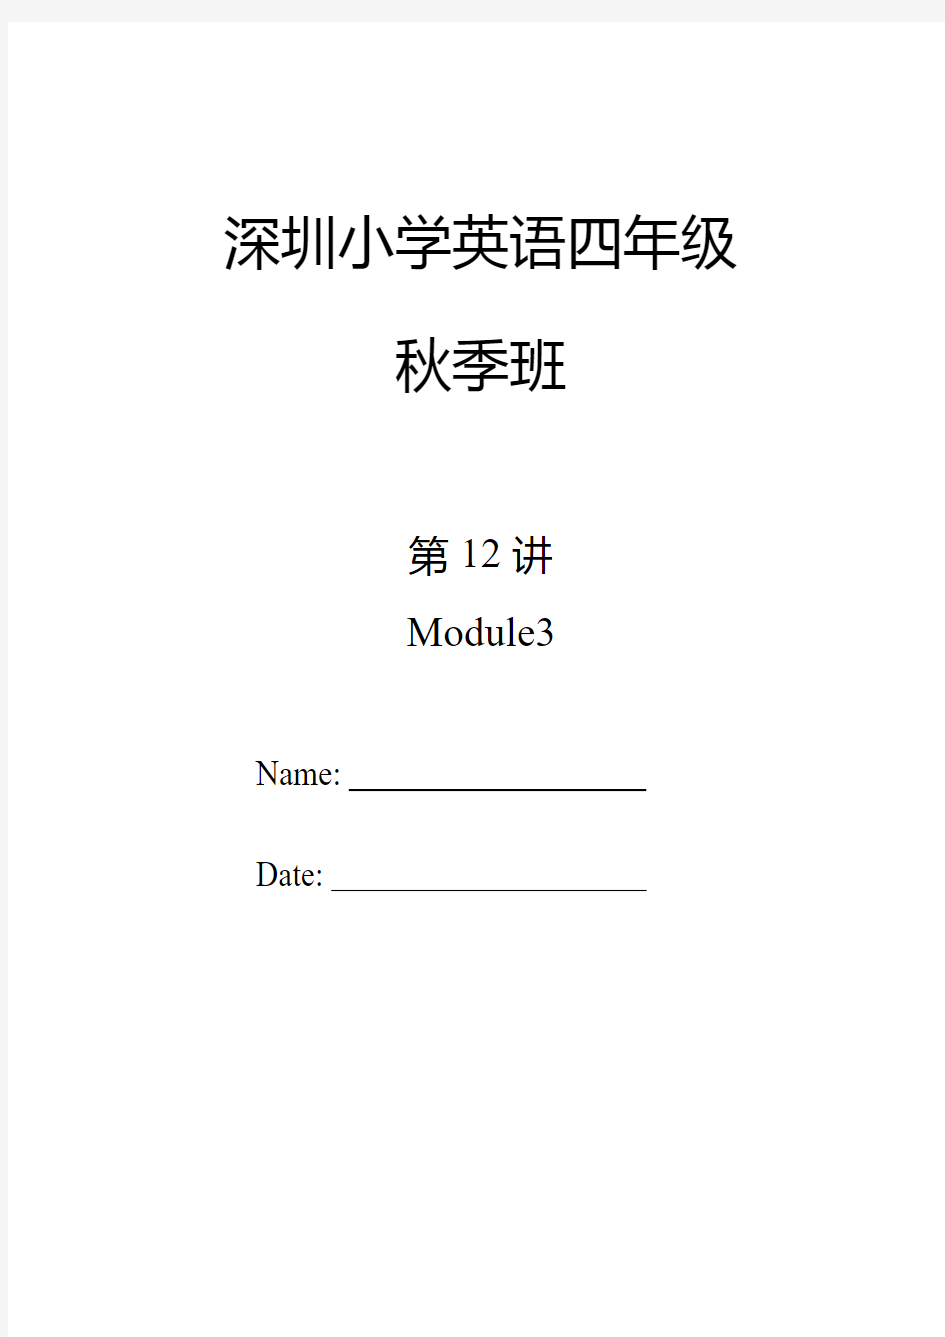 深圳小学英语四年级上册Module 3复习资料